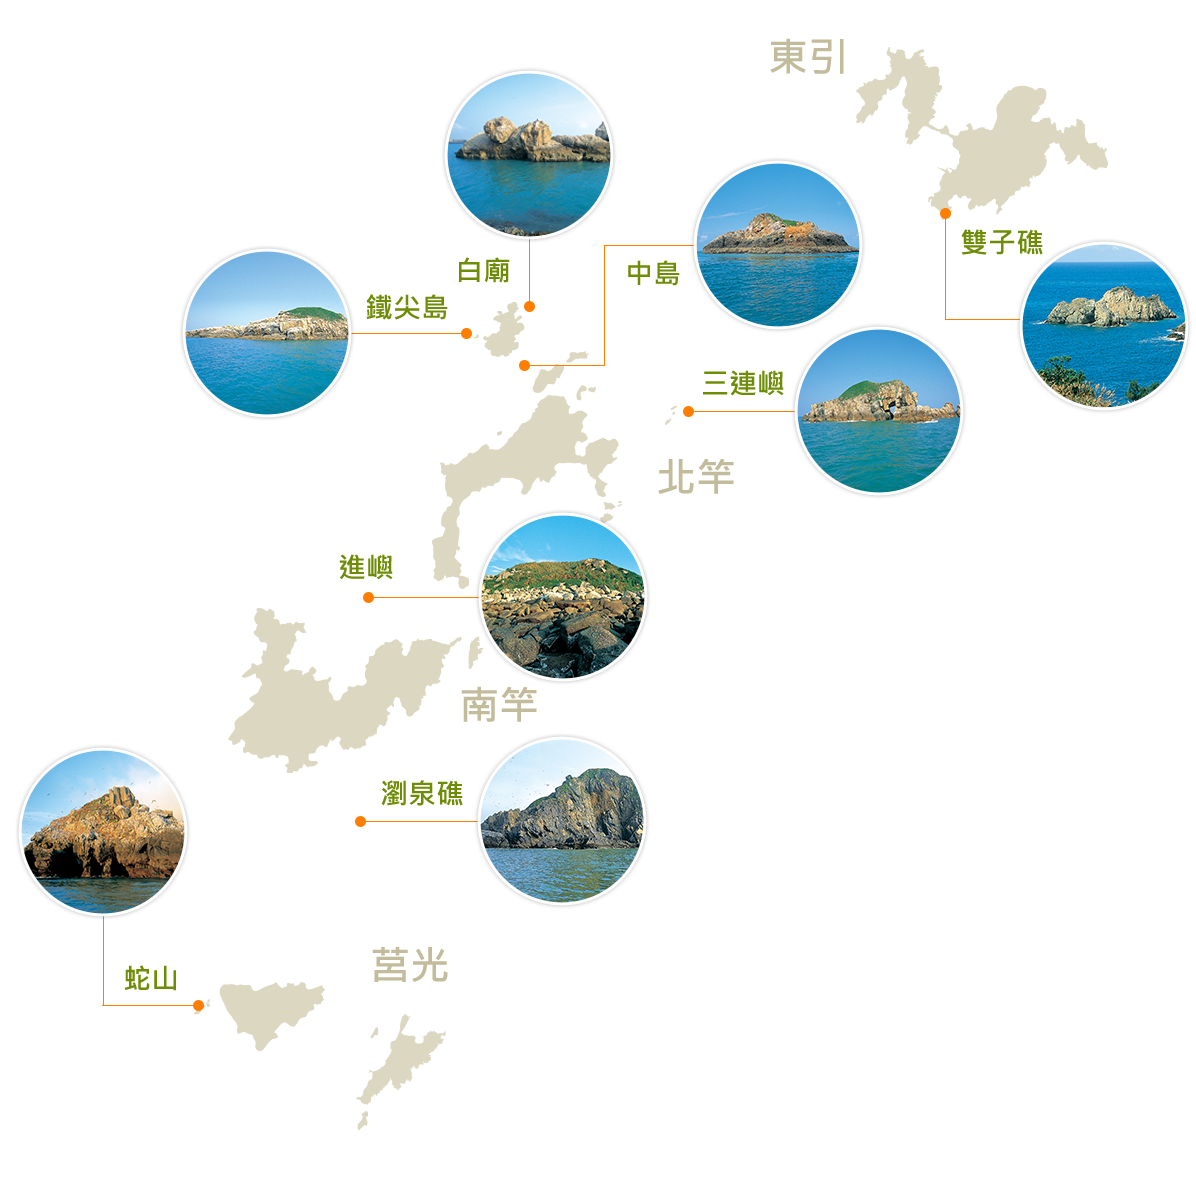 馬祖列島燕鷗保護區